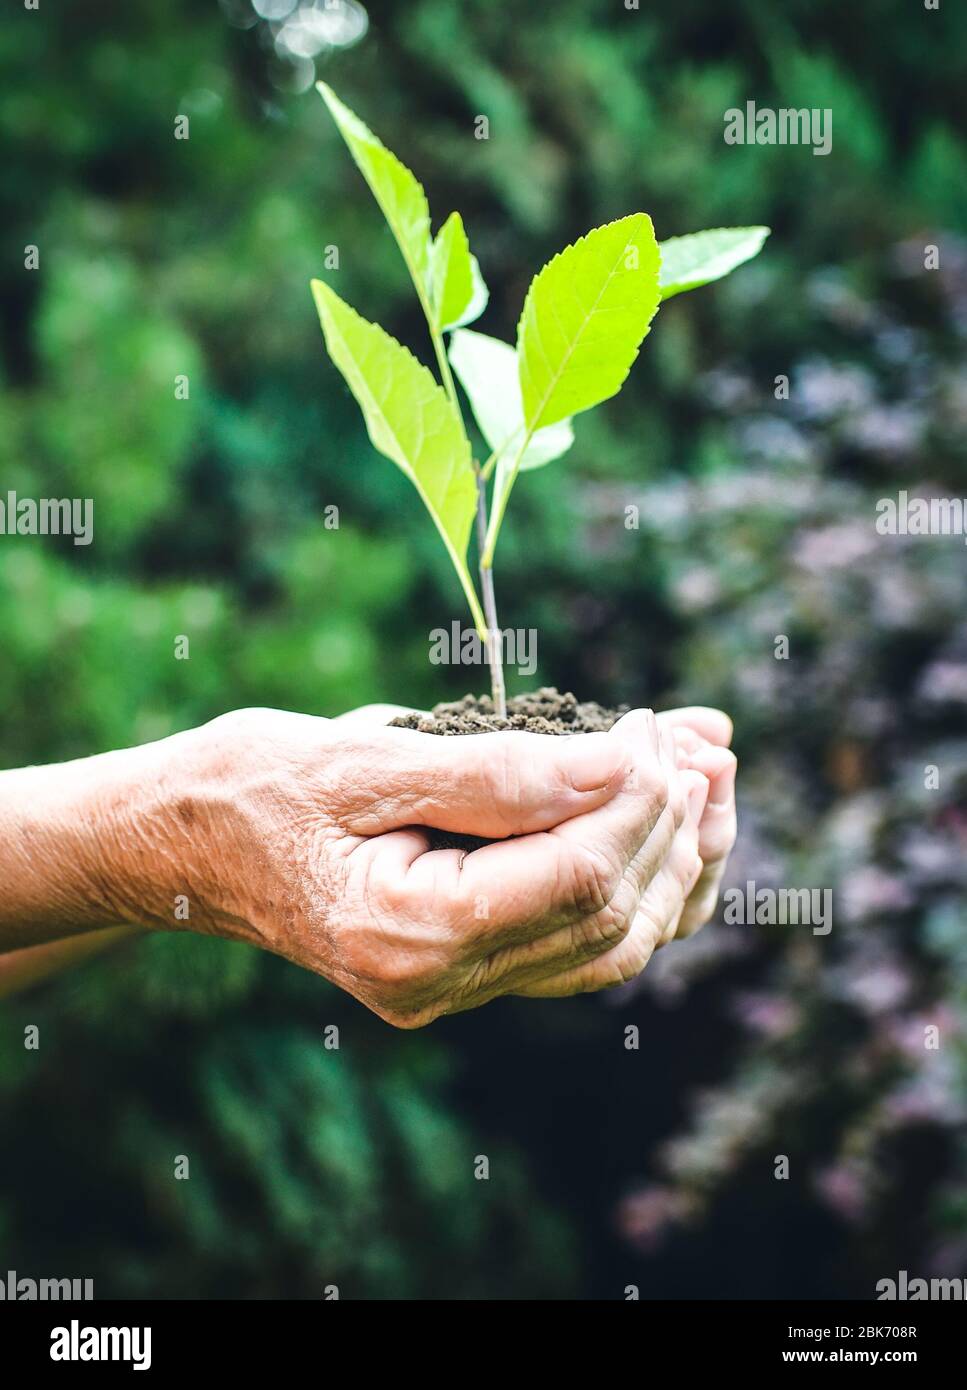 Vieilles mains ridées tenant une jeune plante verte et une poignée terreuse à la lumière du soleil, fond vert flou. Les mains de femmes âgées plantent le semis Banque D'Images